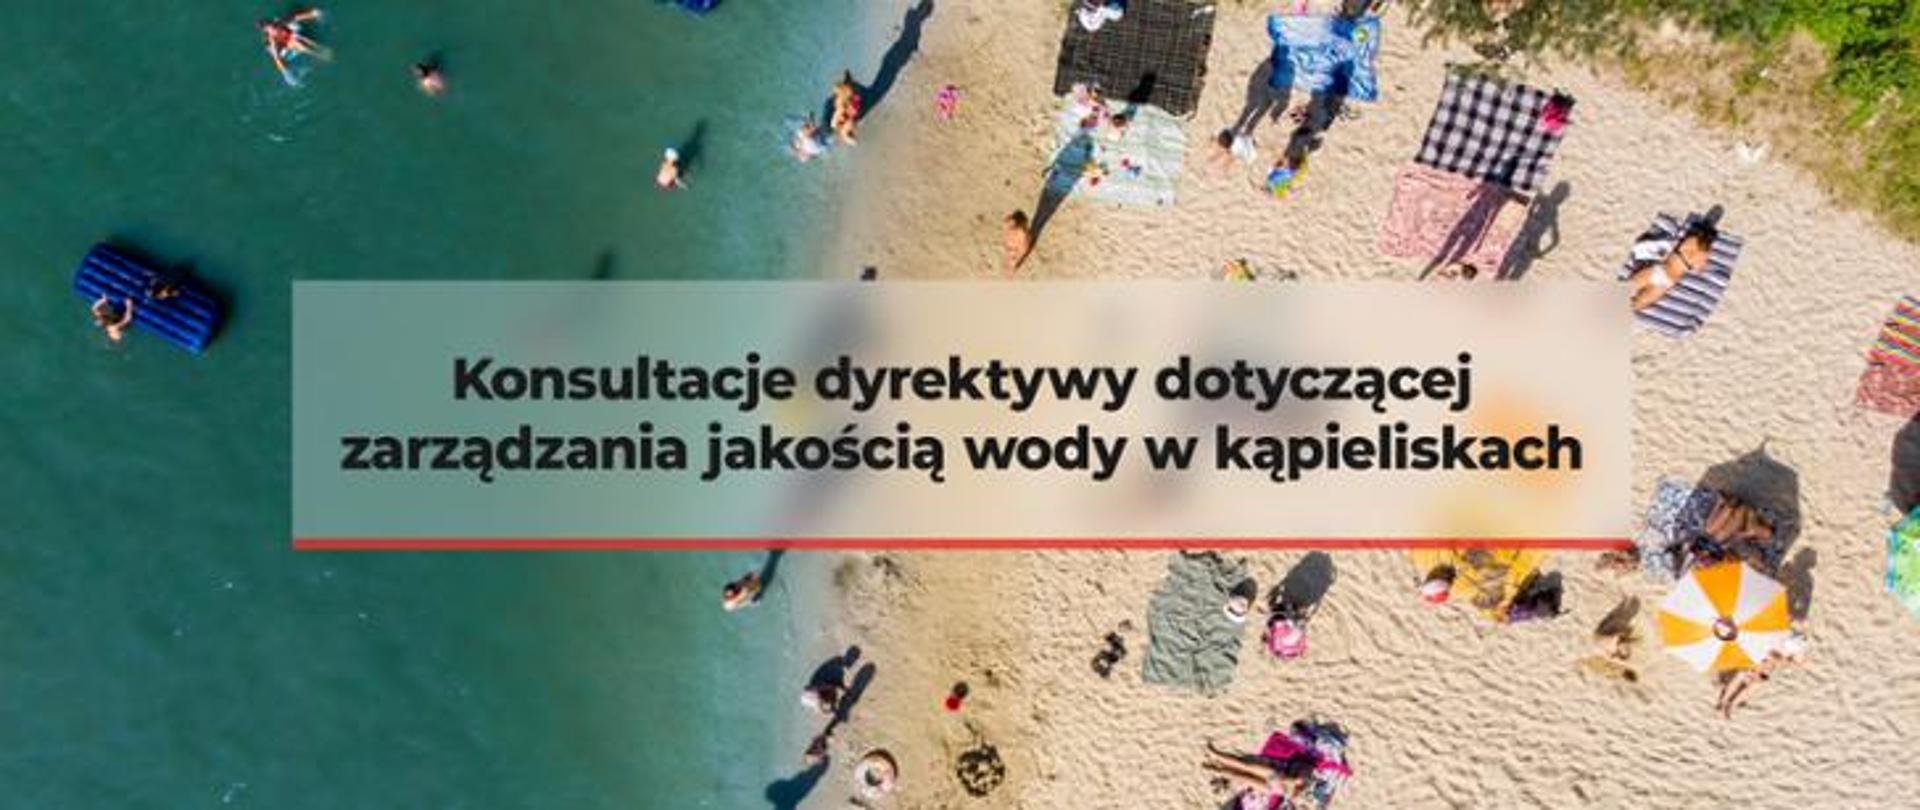 Napis: Konsultacje dyrektywy dotyczącej zarządzania jakością wody w kąpieliskach. W tle na zdjęciu morze - ludzie którzy się kąpią w morzu, plaża, ludzie leżący na kolorowych ręcznikach, parasole słoneczne